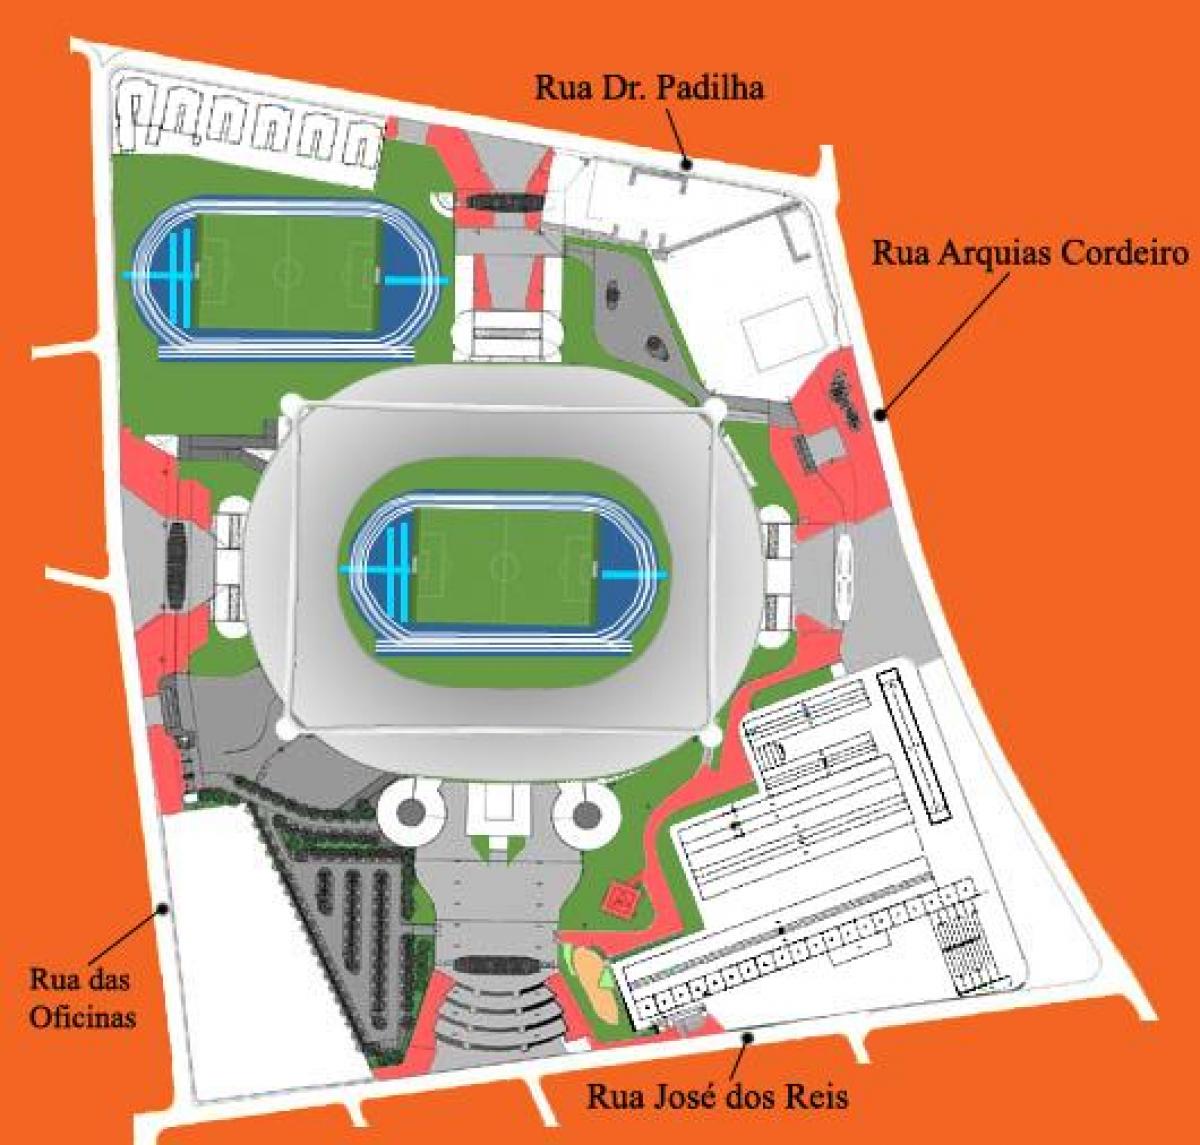 Kaart van die stadion Engenhão